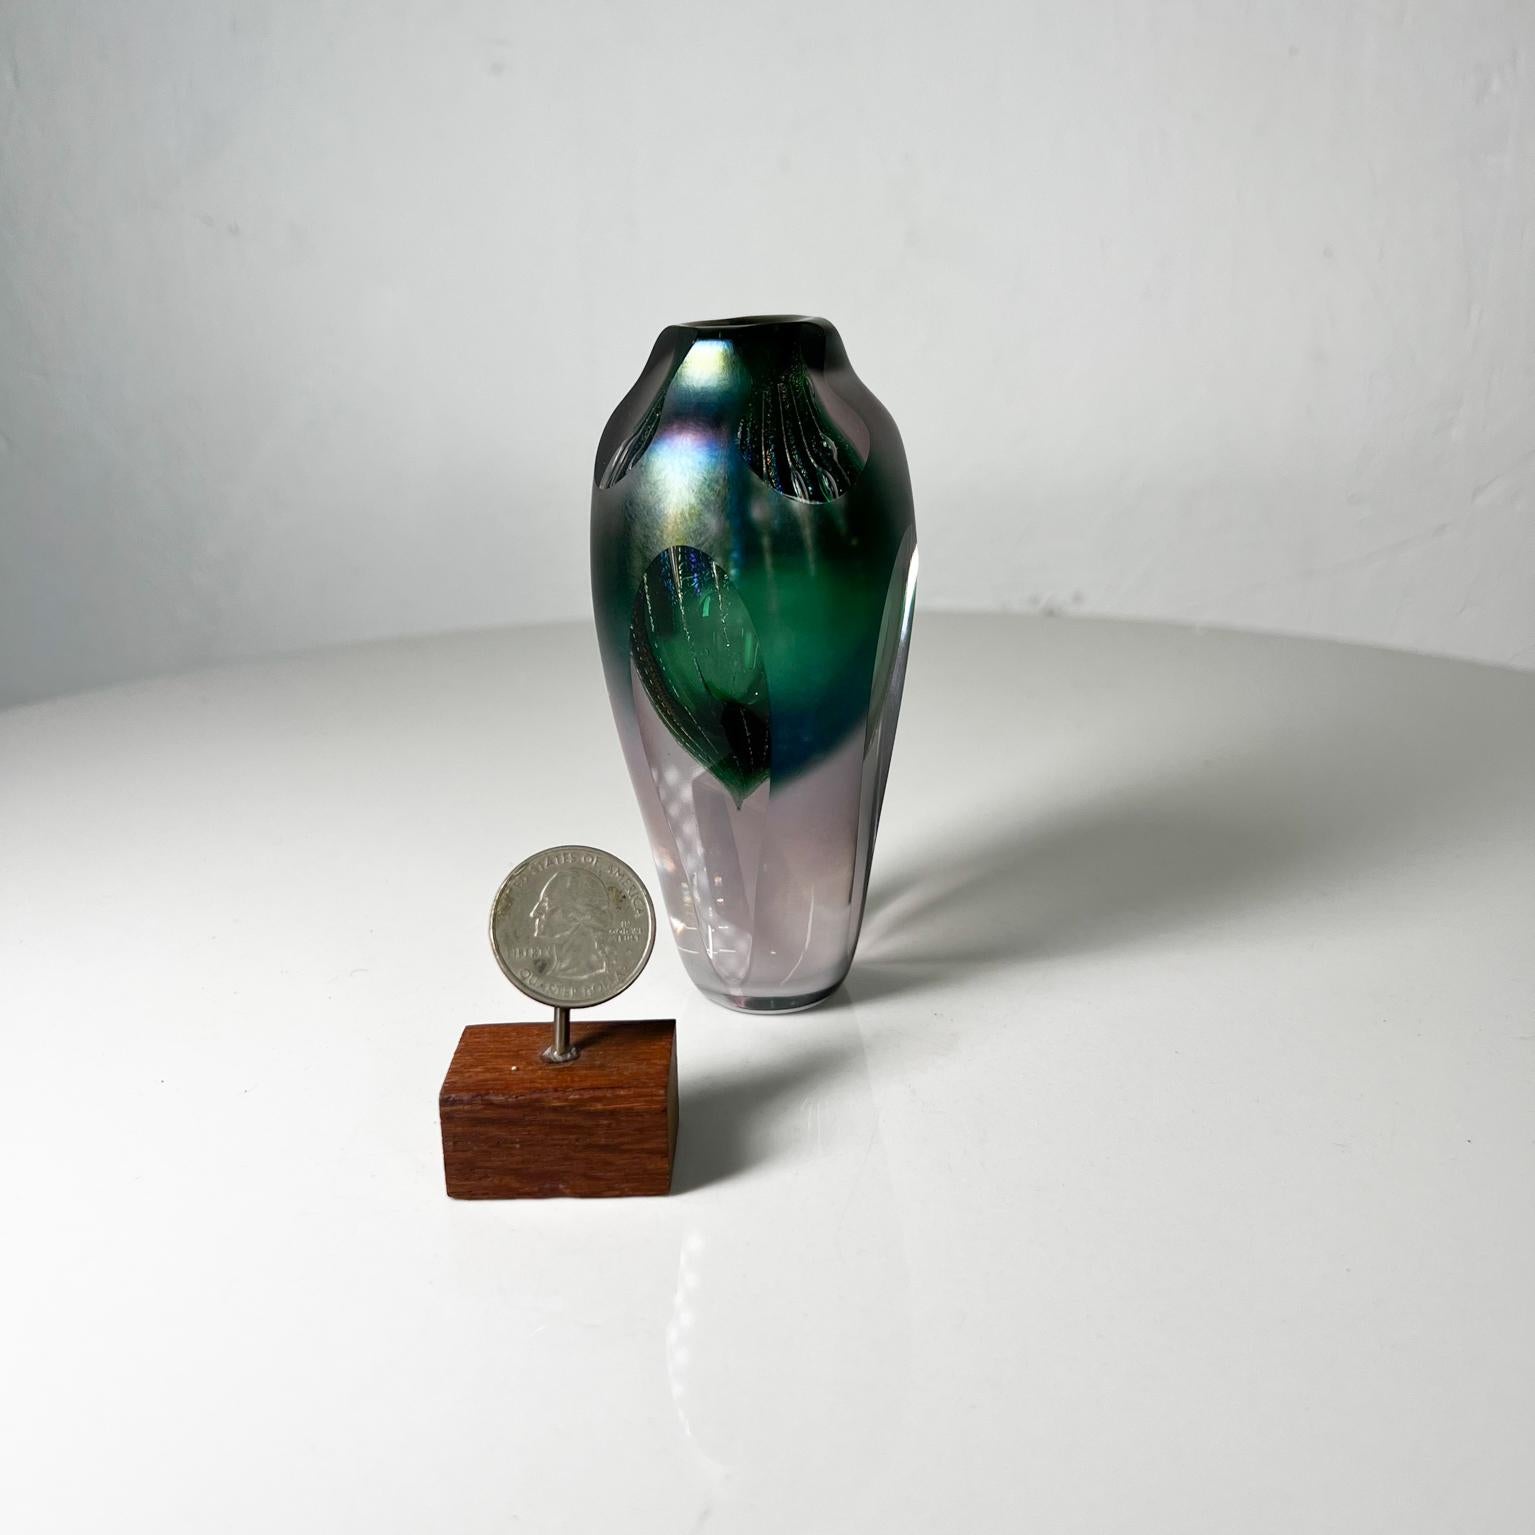 Par Brian Maytum Art Glass
Vase en verre d'art soufflé Modern Studio Vert
1989 daté et signé en bas.
4,38 de haut x 2,13 de diamètre
État original vintage d'occasion.
Voir toutes les images.

